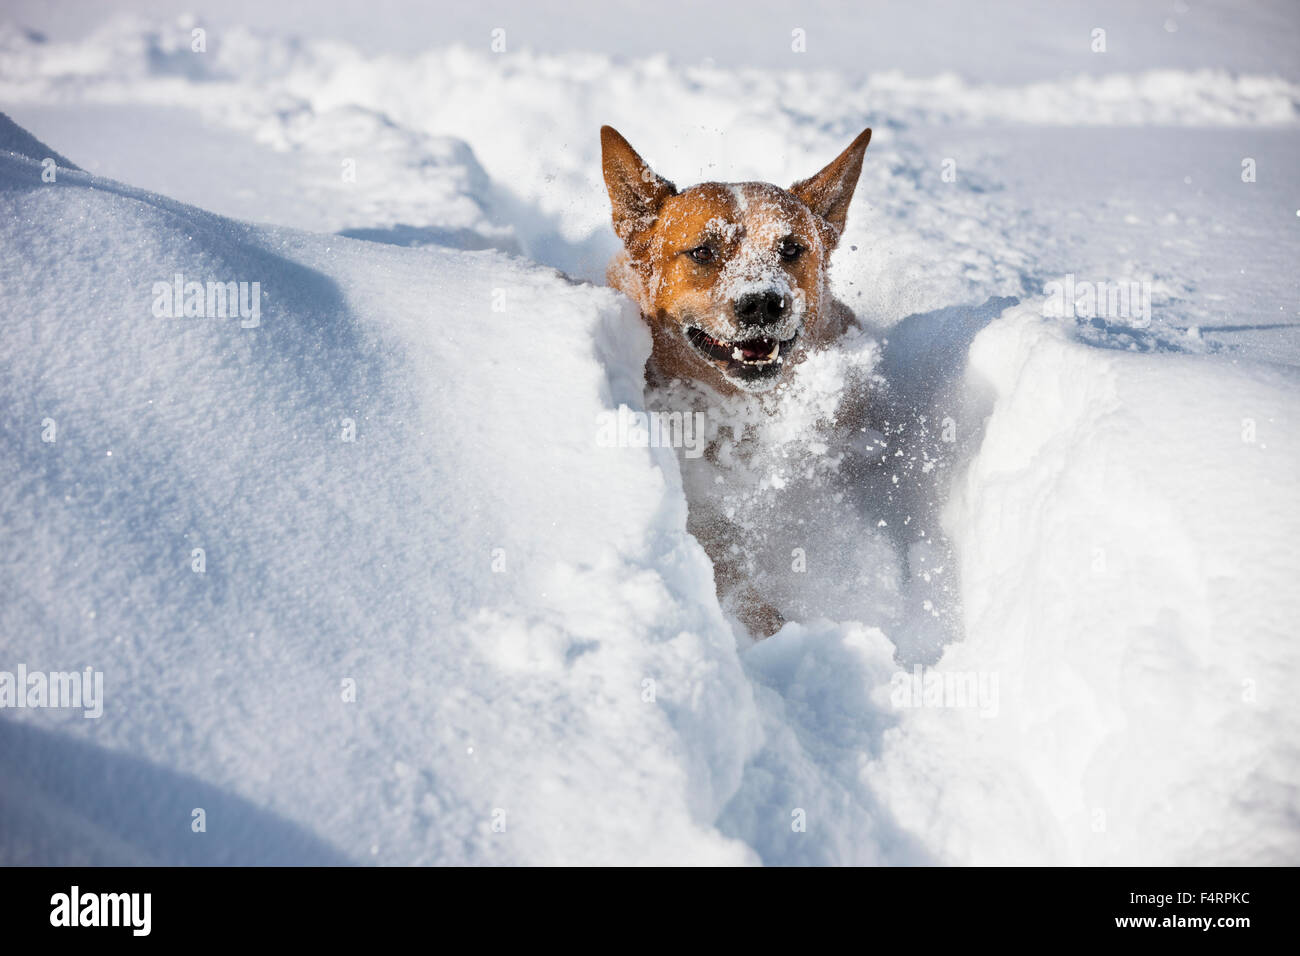 Australian Cattle Dog, homme, rouge, courir dans la neige profonde, Tyrol du Nord, Autriche Banque D'Images